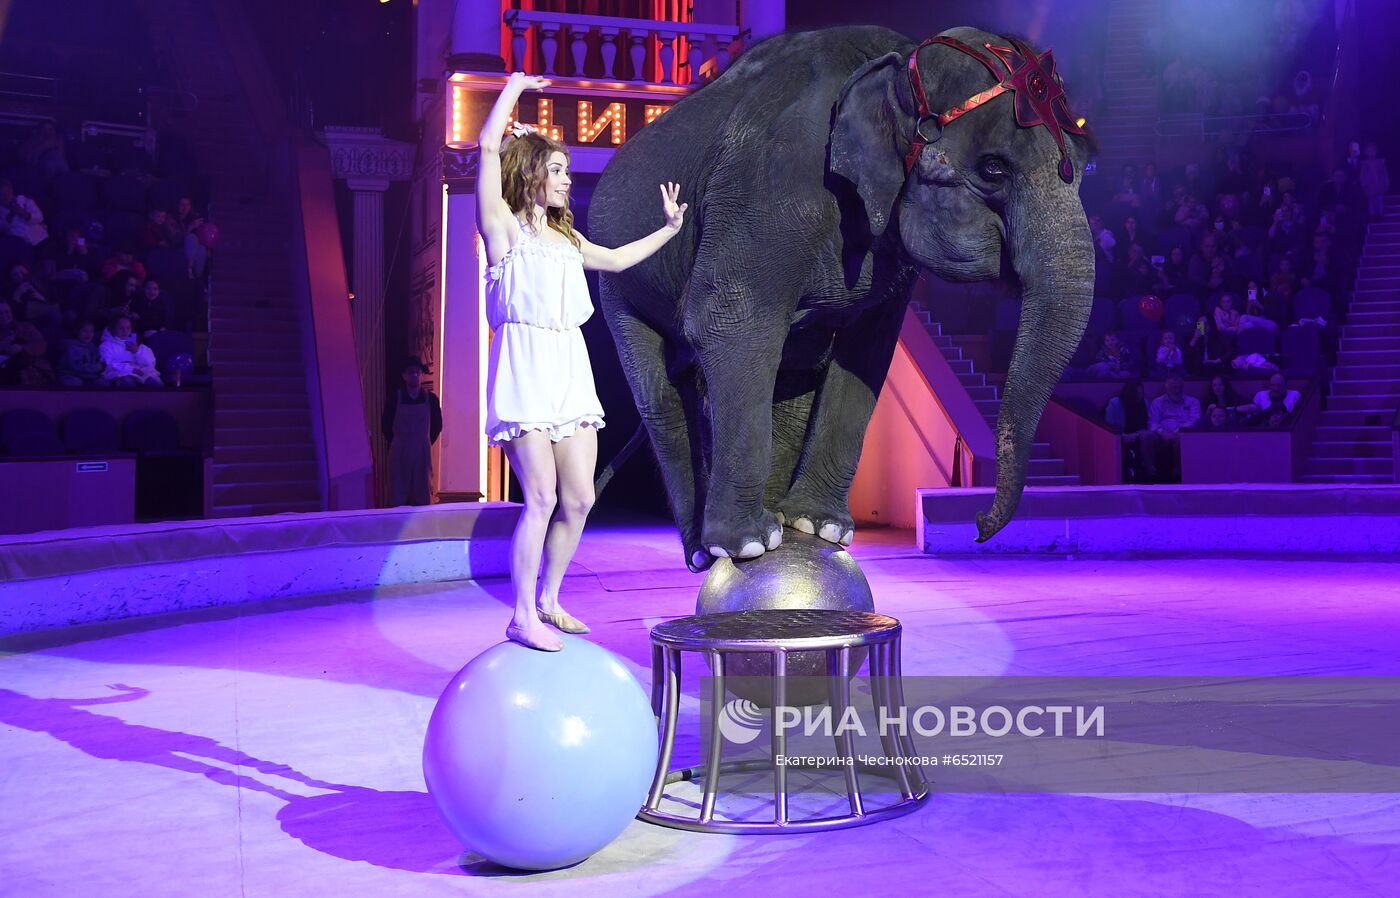 Девочка и слон цирк кисловодск. Девушки и слон цирк. Слоны в цирке.